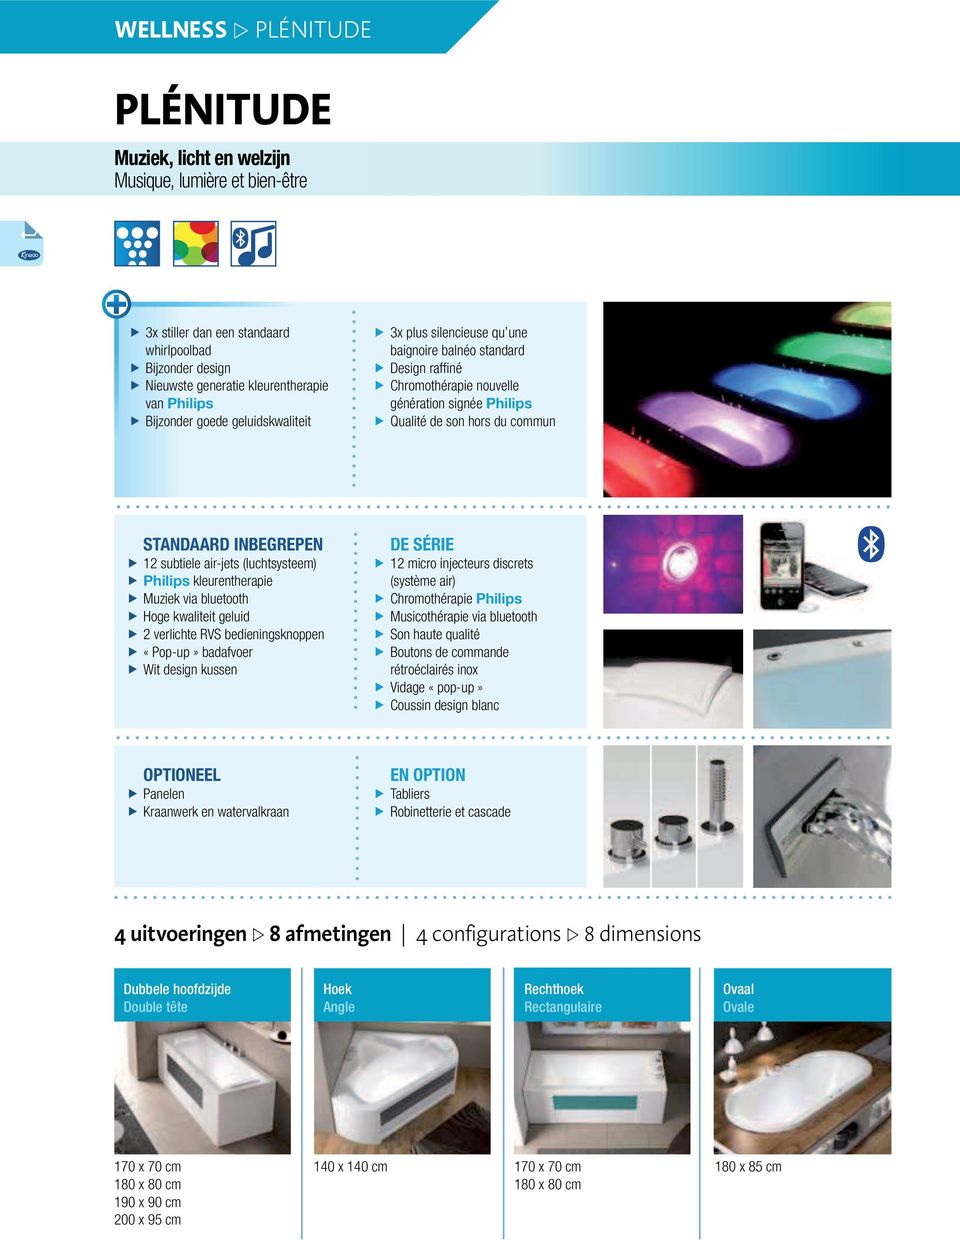 subtiele air-jets (luchtsysteem) Philips kleurentherapie Muziek via bluetooth Hoge kwaliteit geluid 2 verlichte RVS bedieningsknoppen «Pop-up» badafvoer Wit design kussen DE SÉRIE 12 micro injecteurs